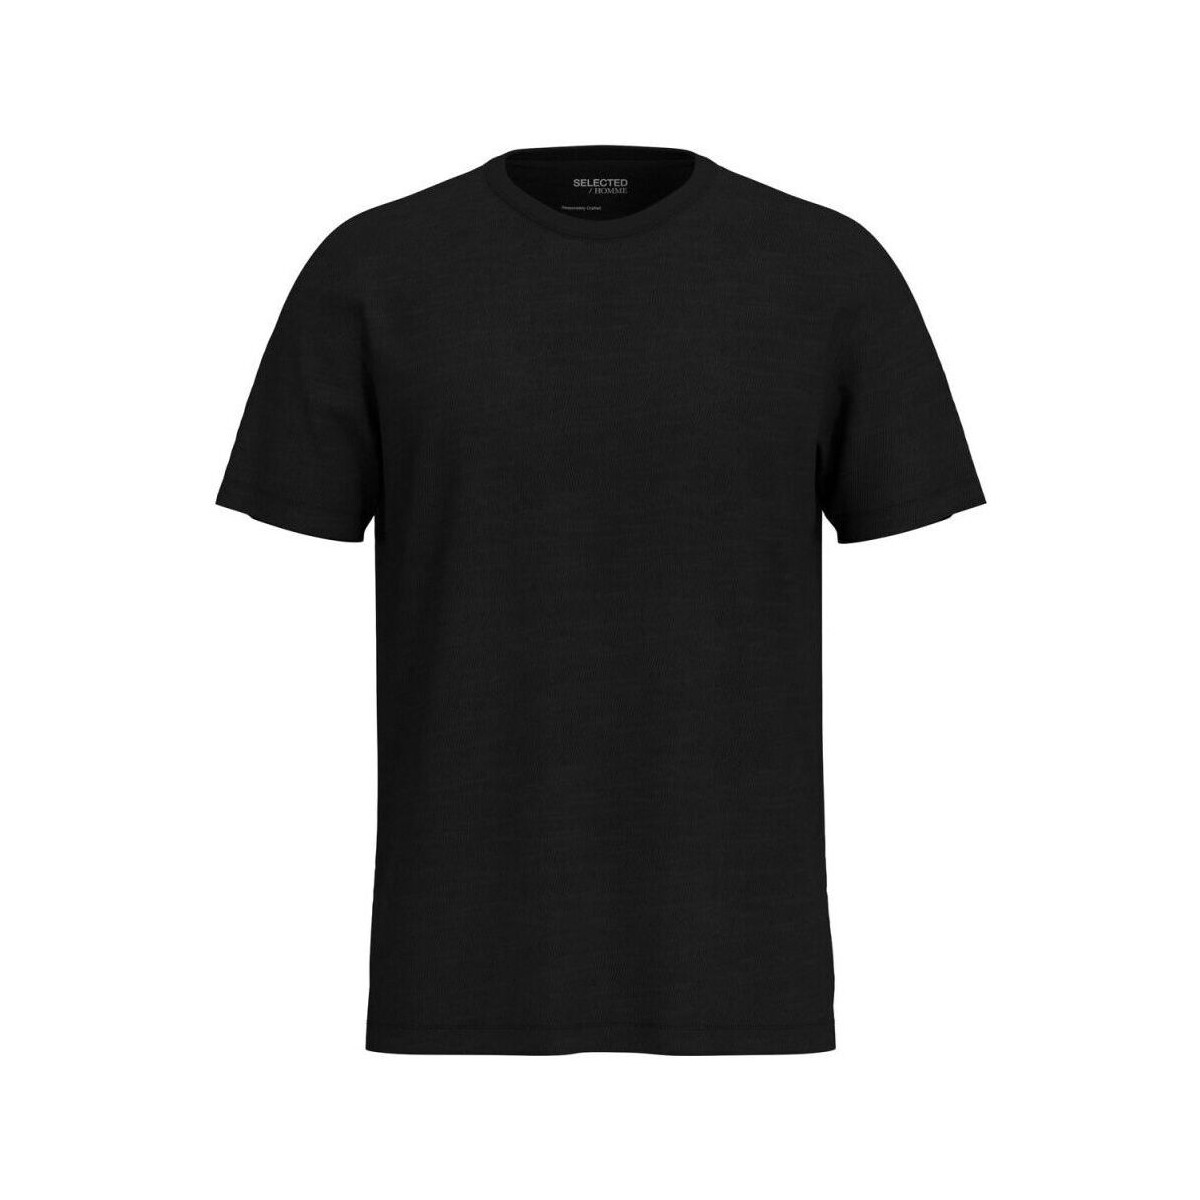 textil Hombre Tops y Camisetas Selected 16092508 ASPEN-BLACK Negro